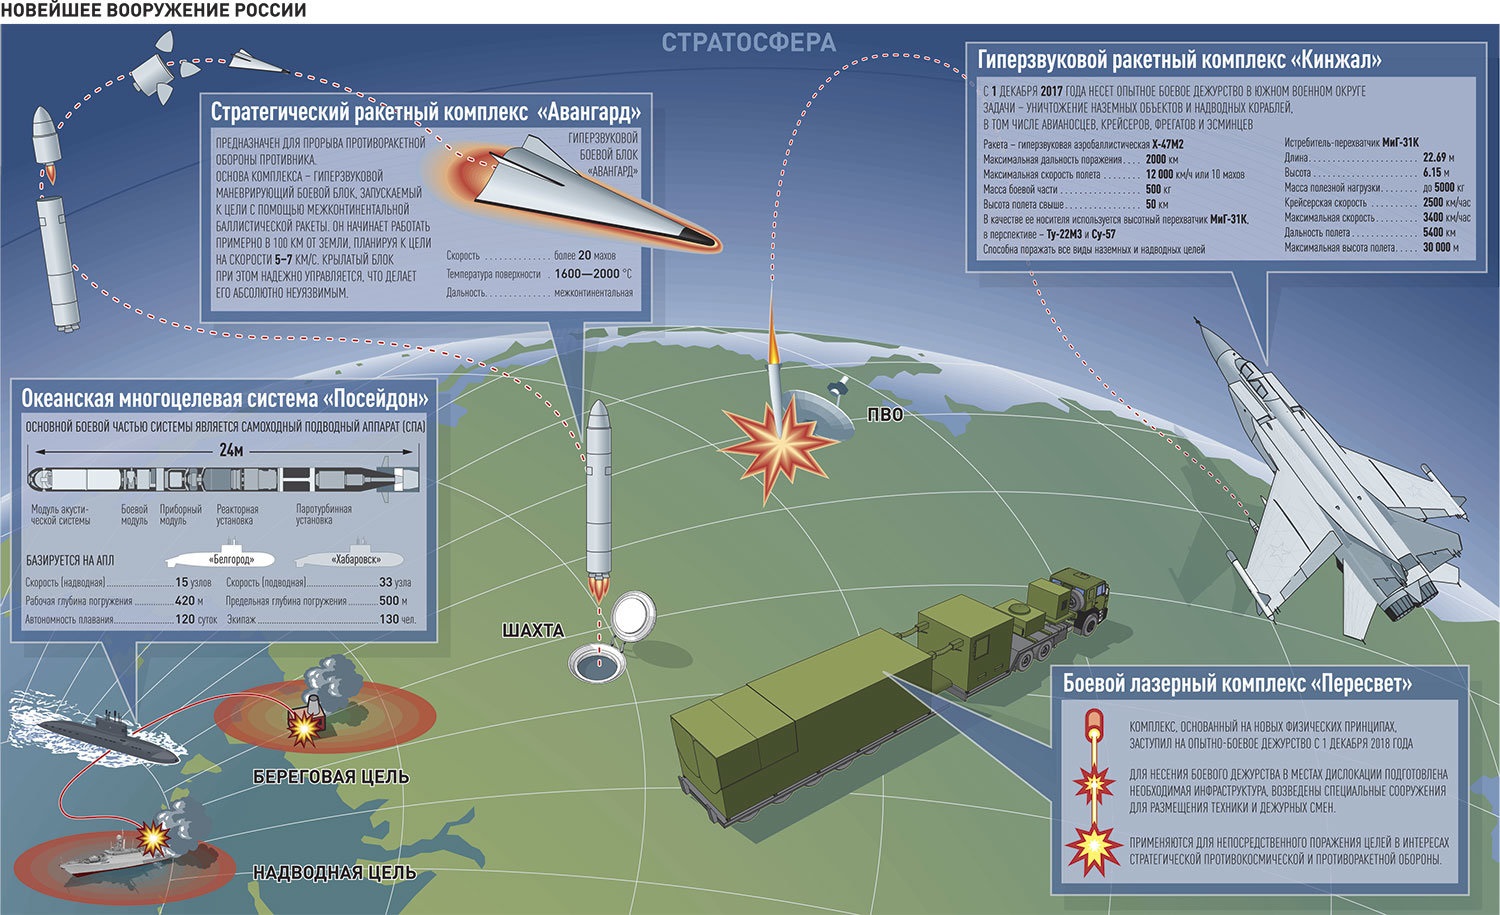 Гарпун (ракета) - harpoon (missile) - dev.abcdef.wiki